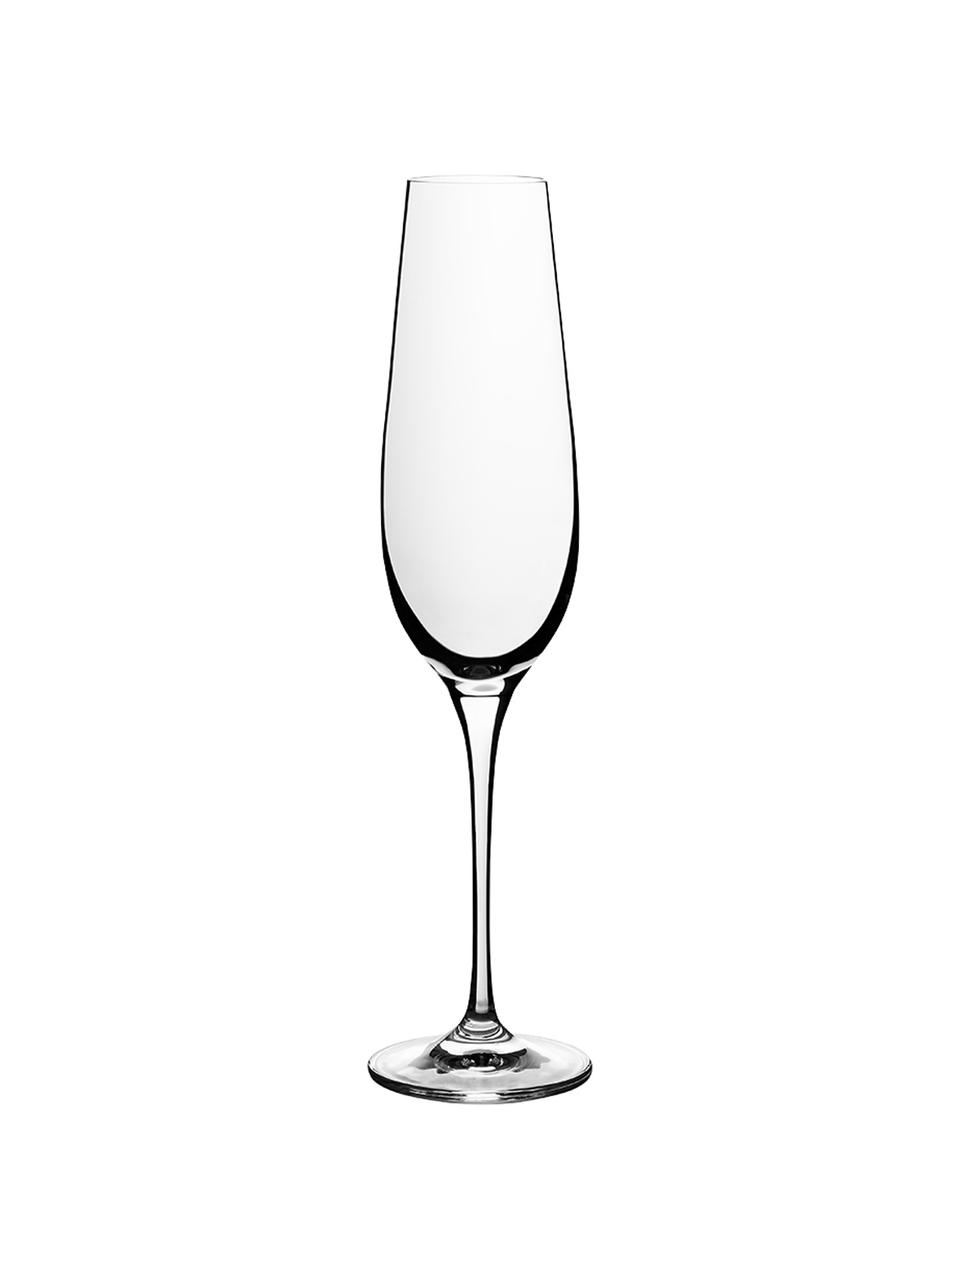 Kryształowy kieliszek do szampana Harmony, 6 szt., Szkło kryształowe o najwyższym połysku, szczególnie widocznym poprzez odbijanie światła
Magiczny blask sprawia, że każdy łyk szampana jest wyjątkowym doznaniem, Transparentny, 200 ml